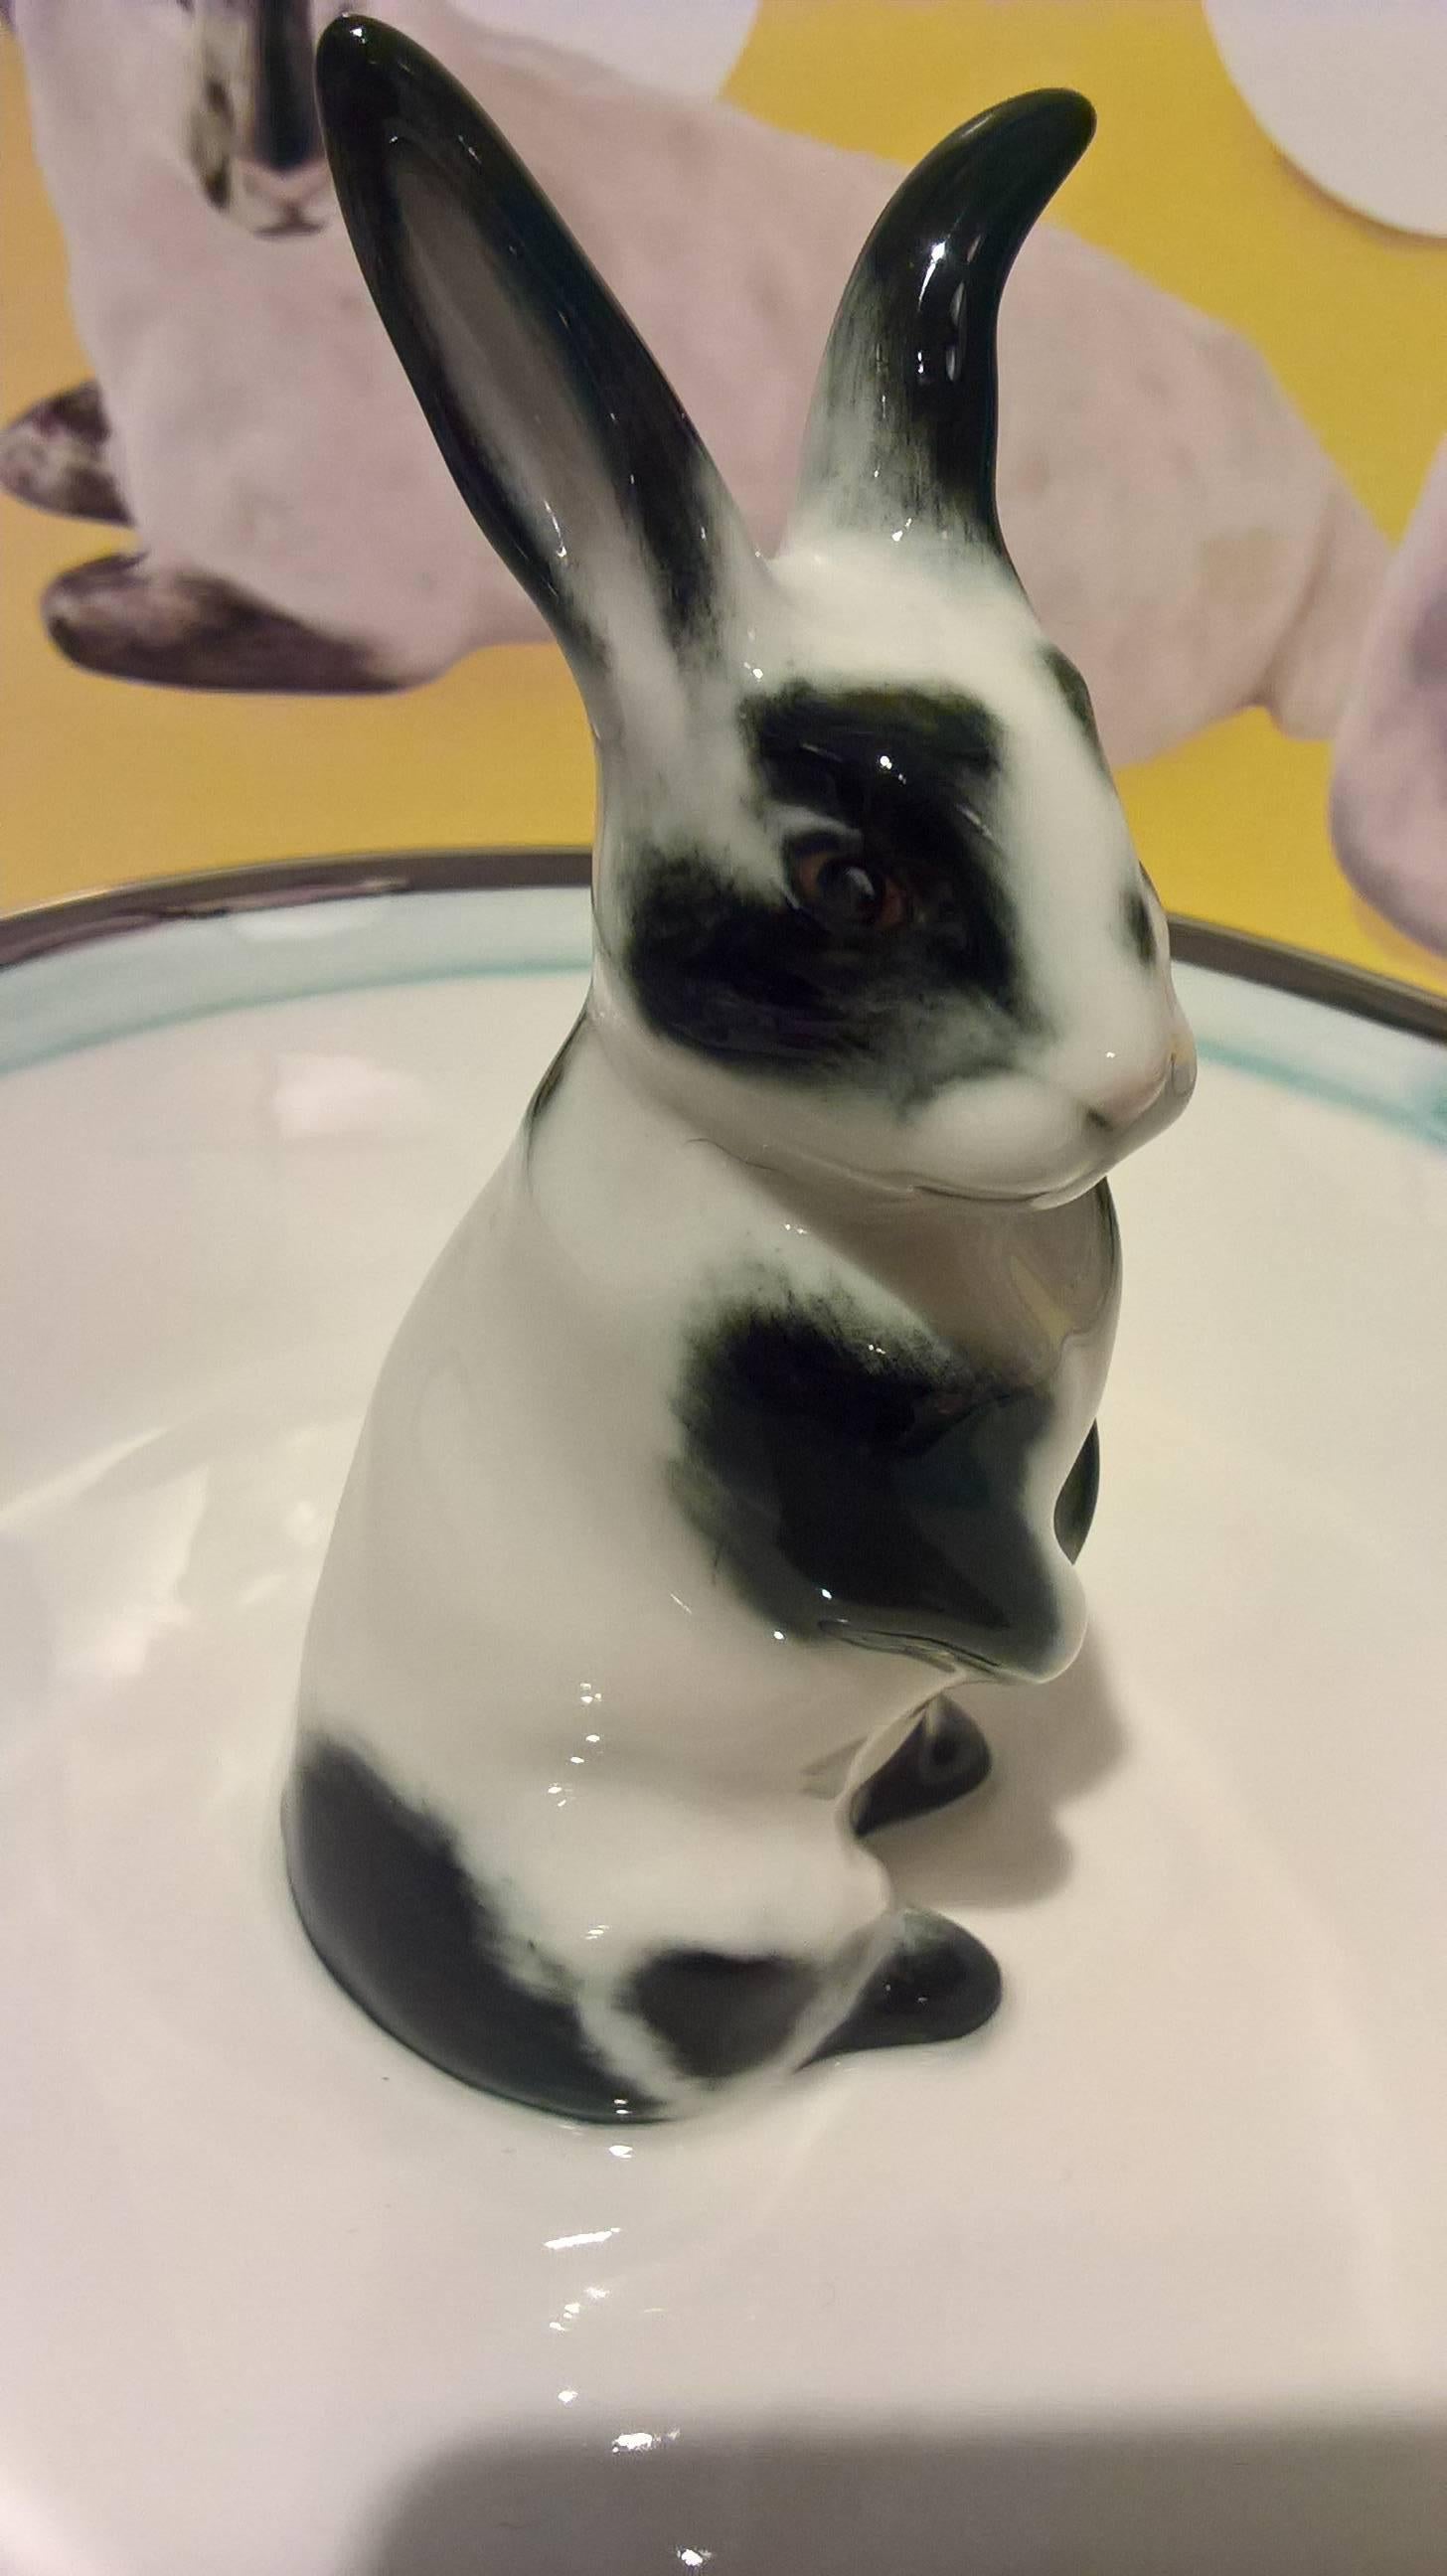 Charmante, vollständig handgefertigte Porzellanschale mit einem freihändig gemalten Hasen im traditionellen Osterdekor. Das Kaninchen ist in schwarz-weißem Dekor gemalt und sitzt in der Mitte der Schale. Die Schale ist mit einer blassblauen und